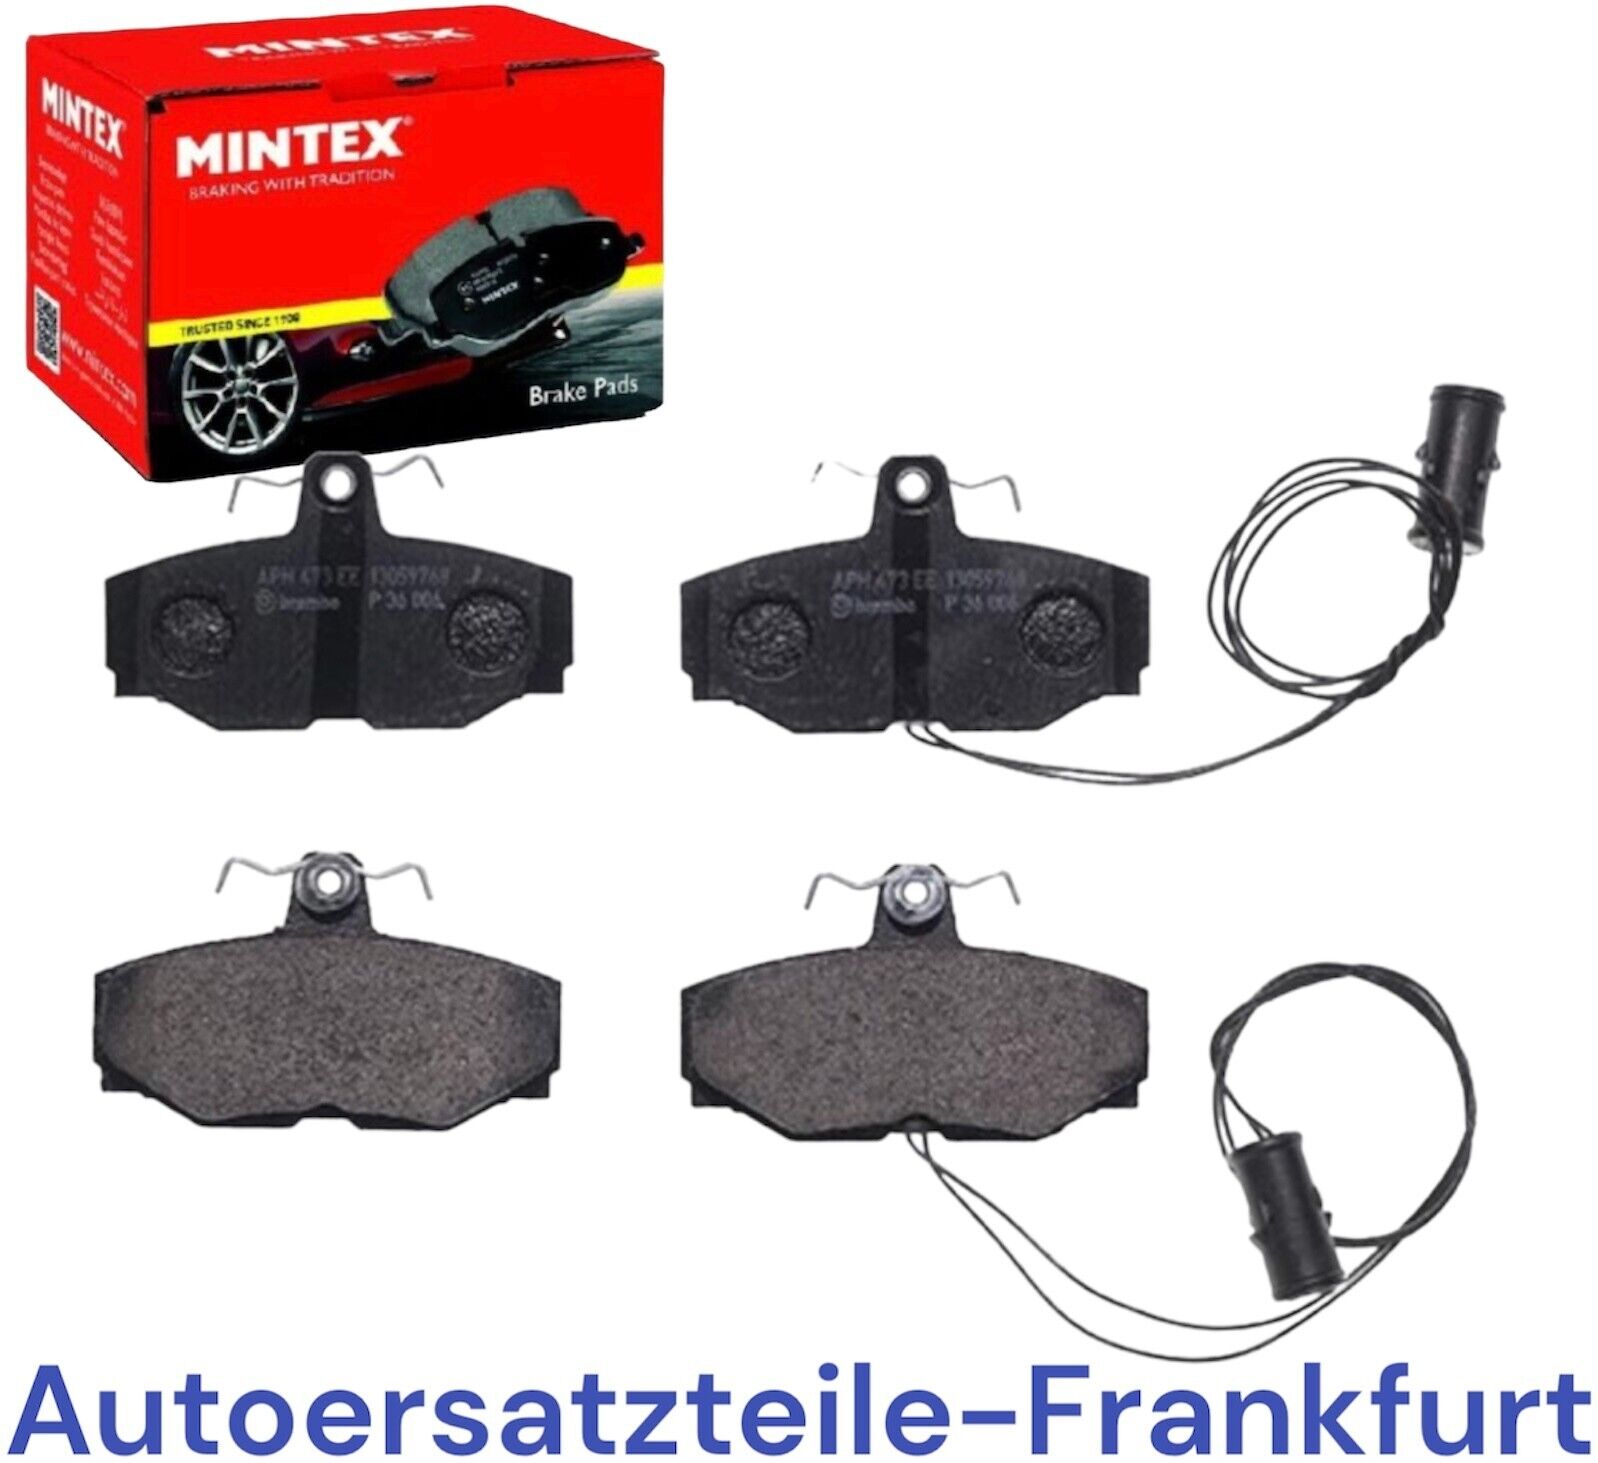 MINTEX MGB412 DAIMLER XJ JAGUAR XJ brake pads + coupe XJ220 XJSC convertible 